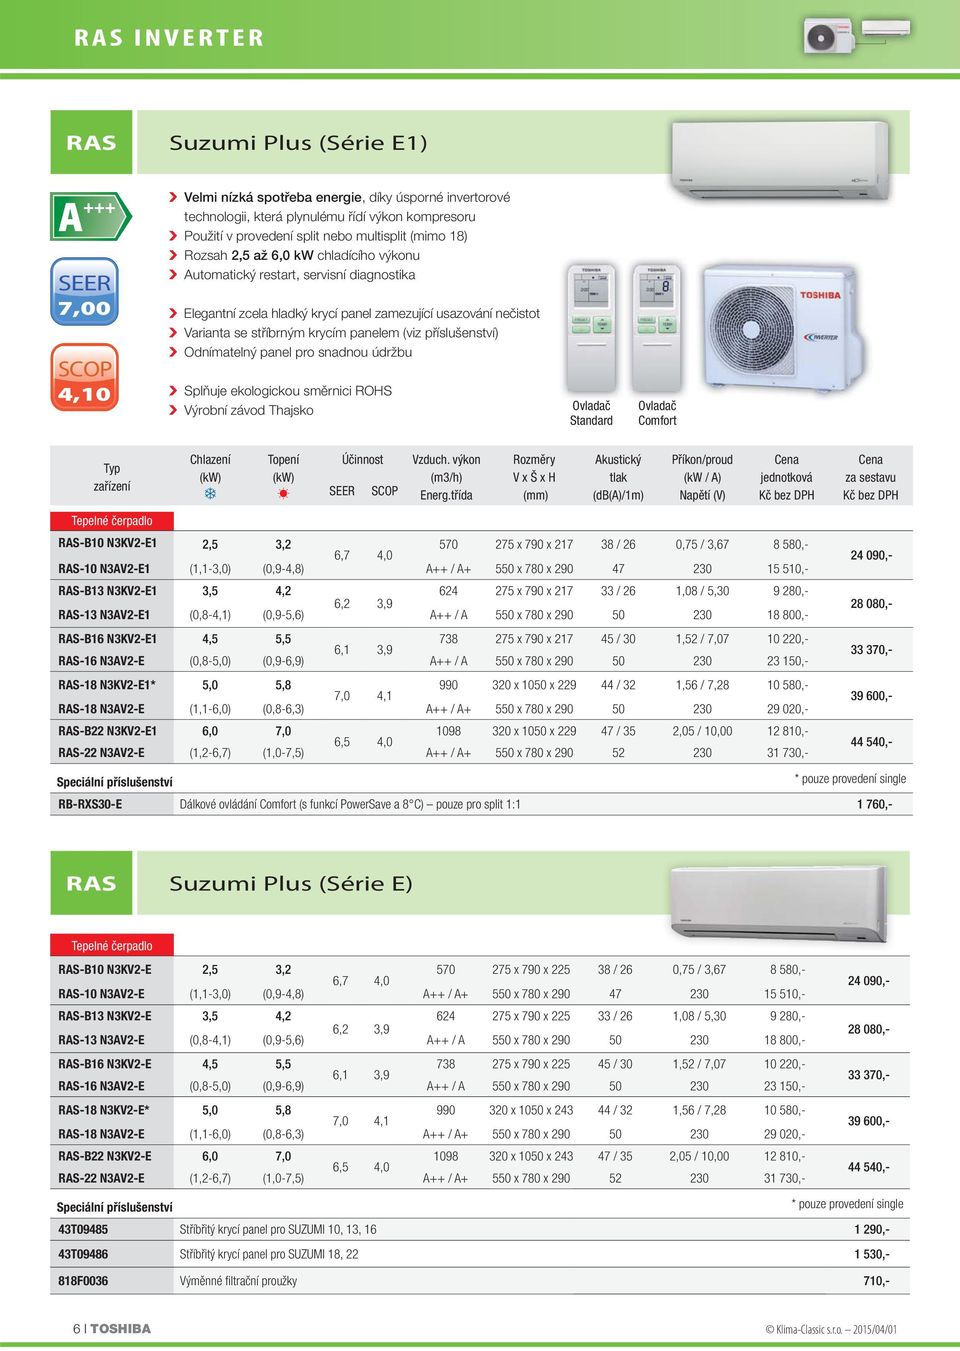 panelem (viz příslušenství) Odnímatelný panel pro snadnou údržbu Splňuje ekologickou směrnici ROHS Výrobní závod Thajsko Ovladač Standard Ovladač Comfort zařízení Chlazení Topení Účinnost Vzduch.